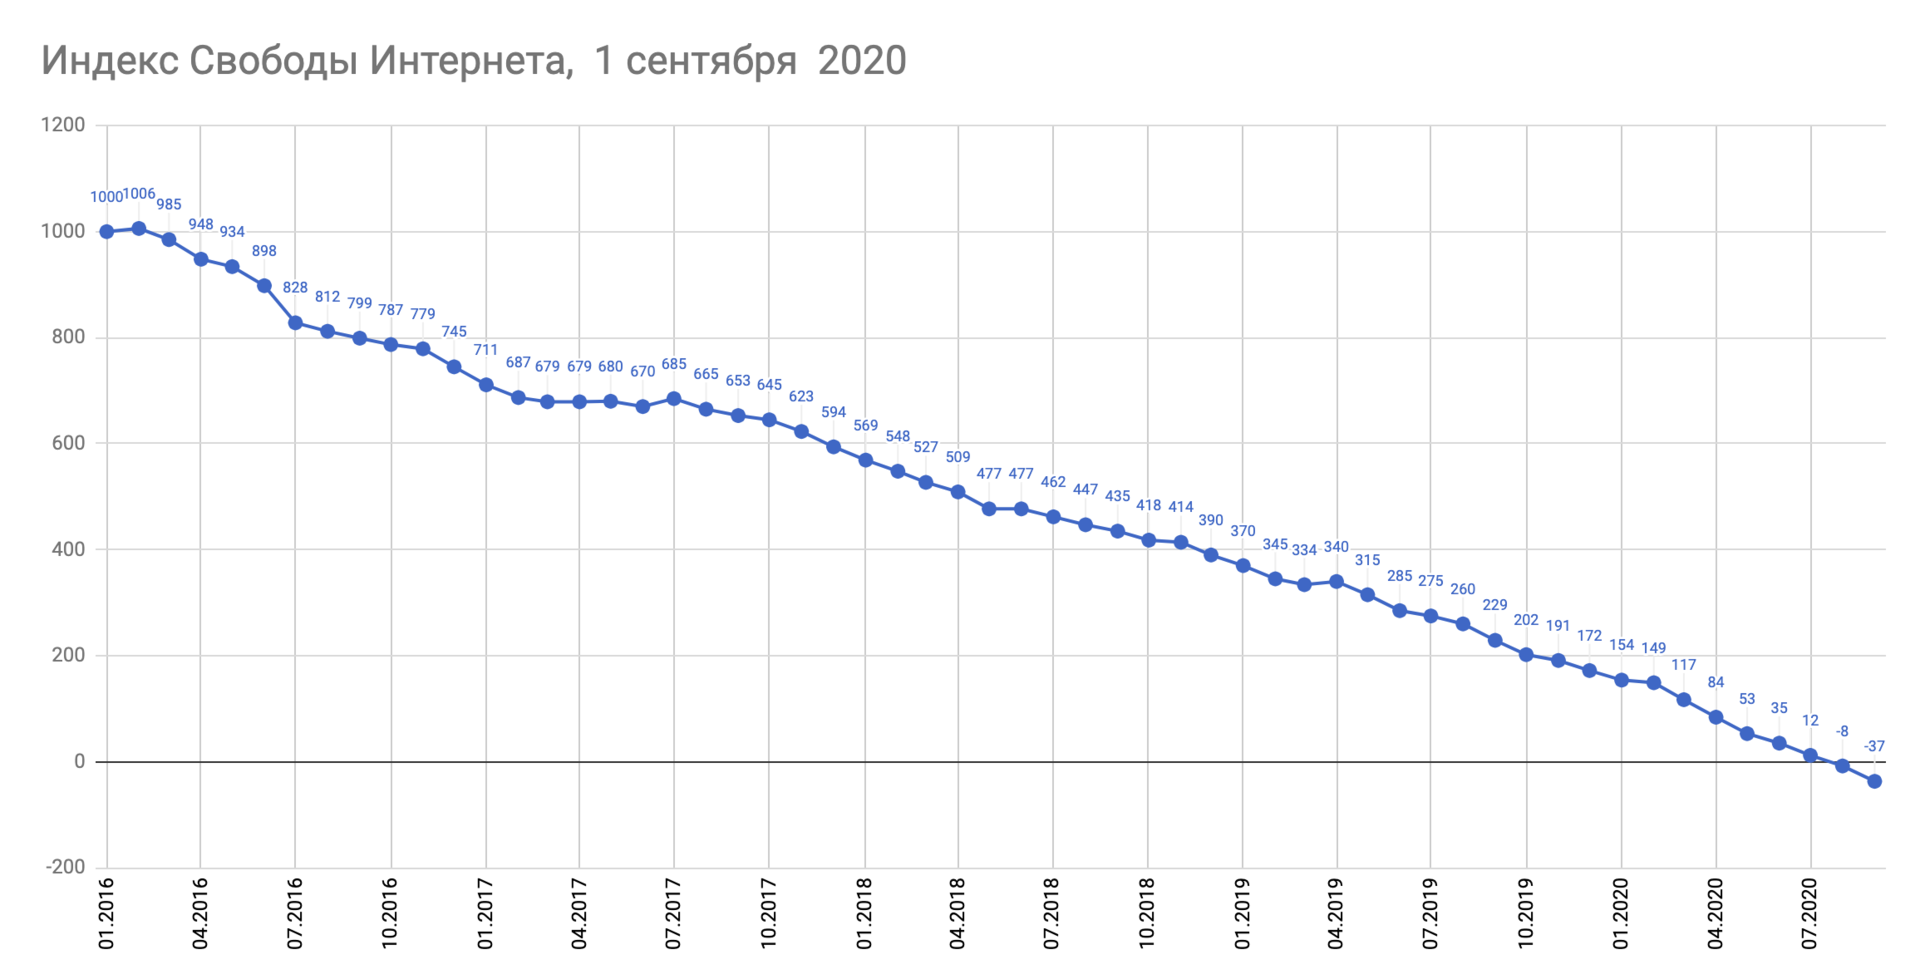 Индекс свободы интернета в России упал ниже нуля